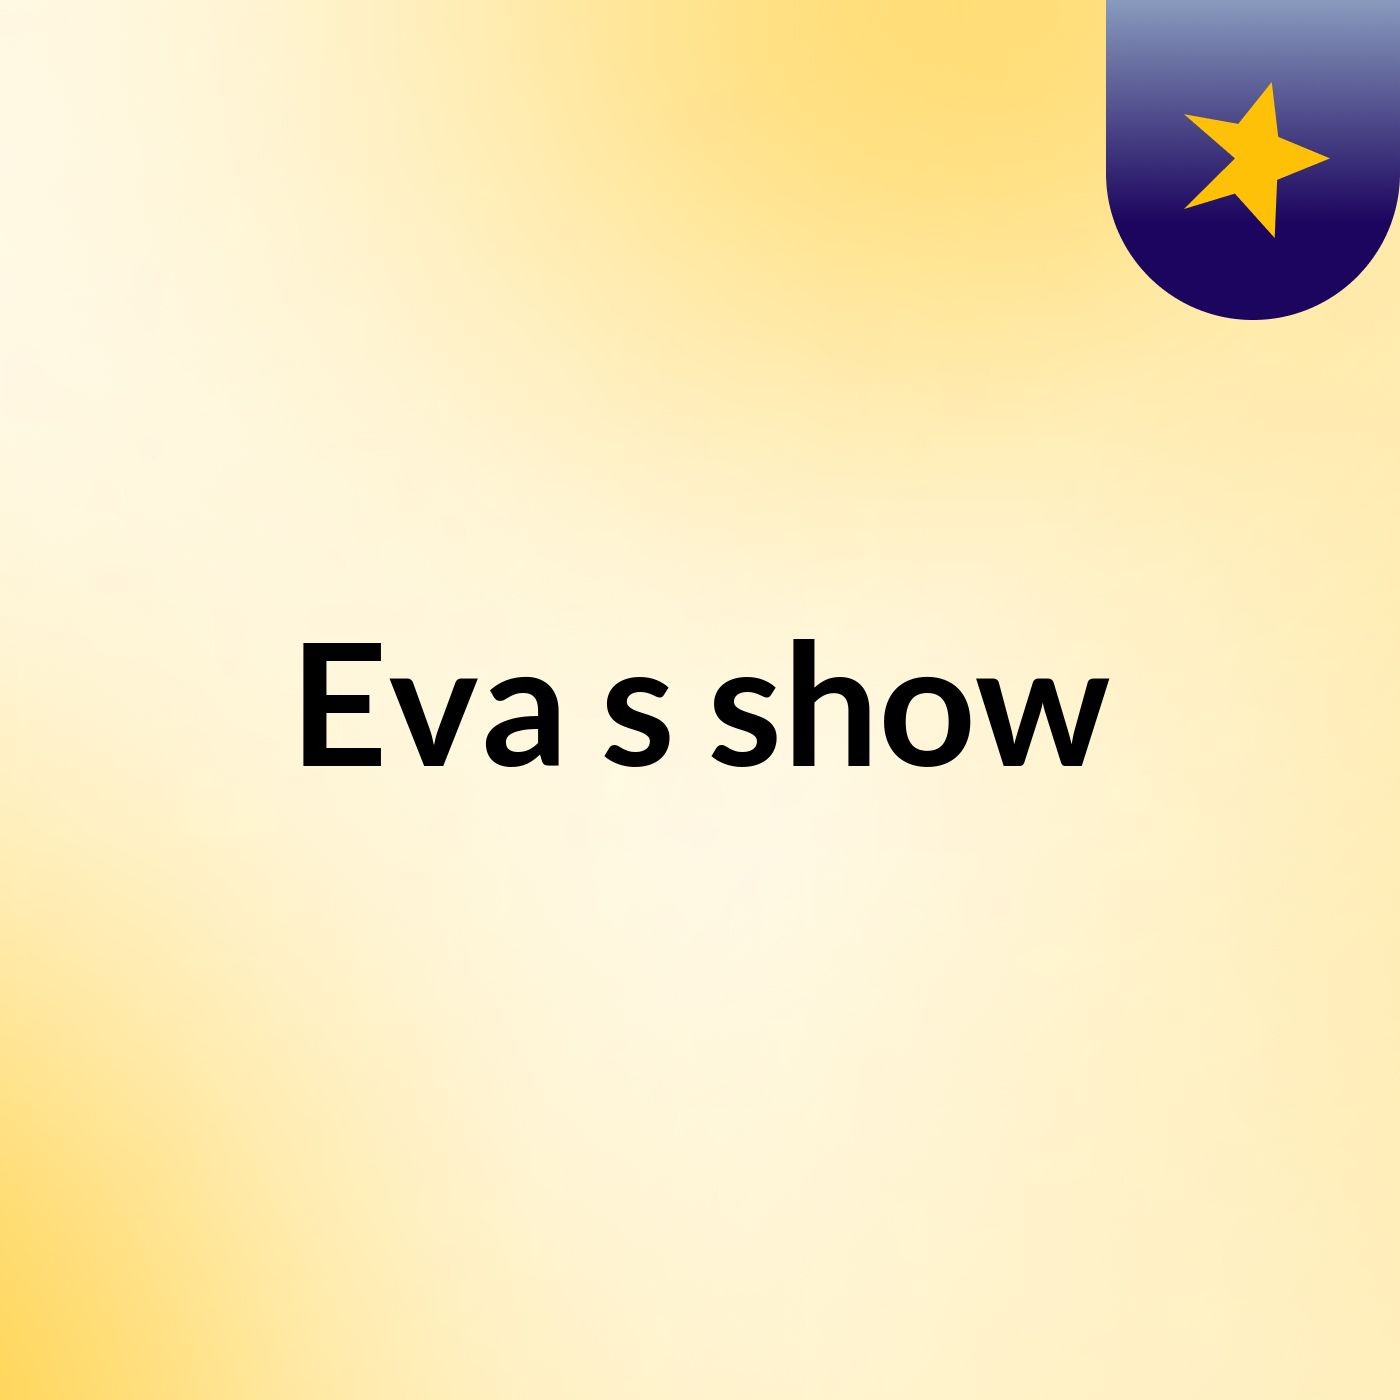 Eva's show